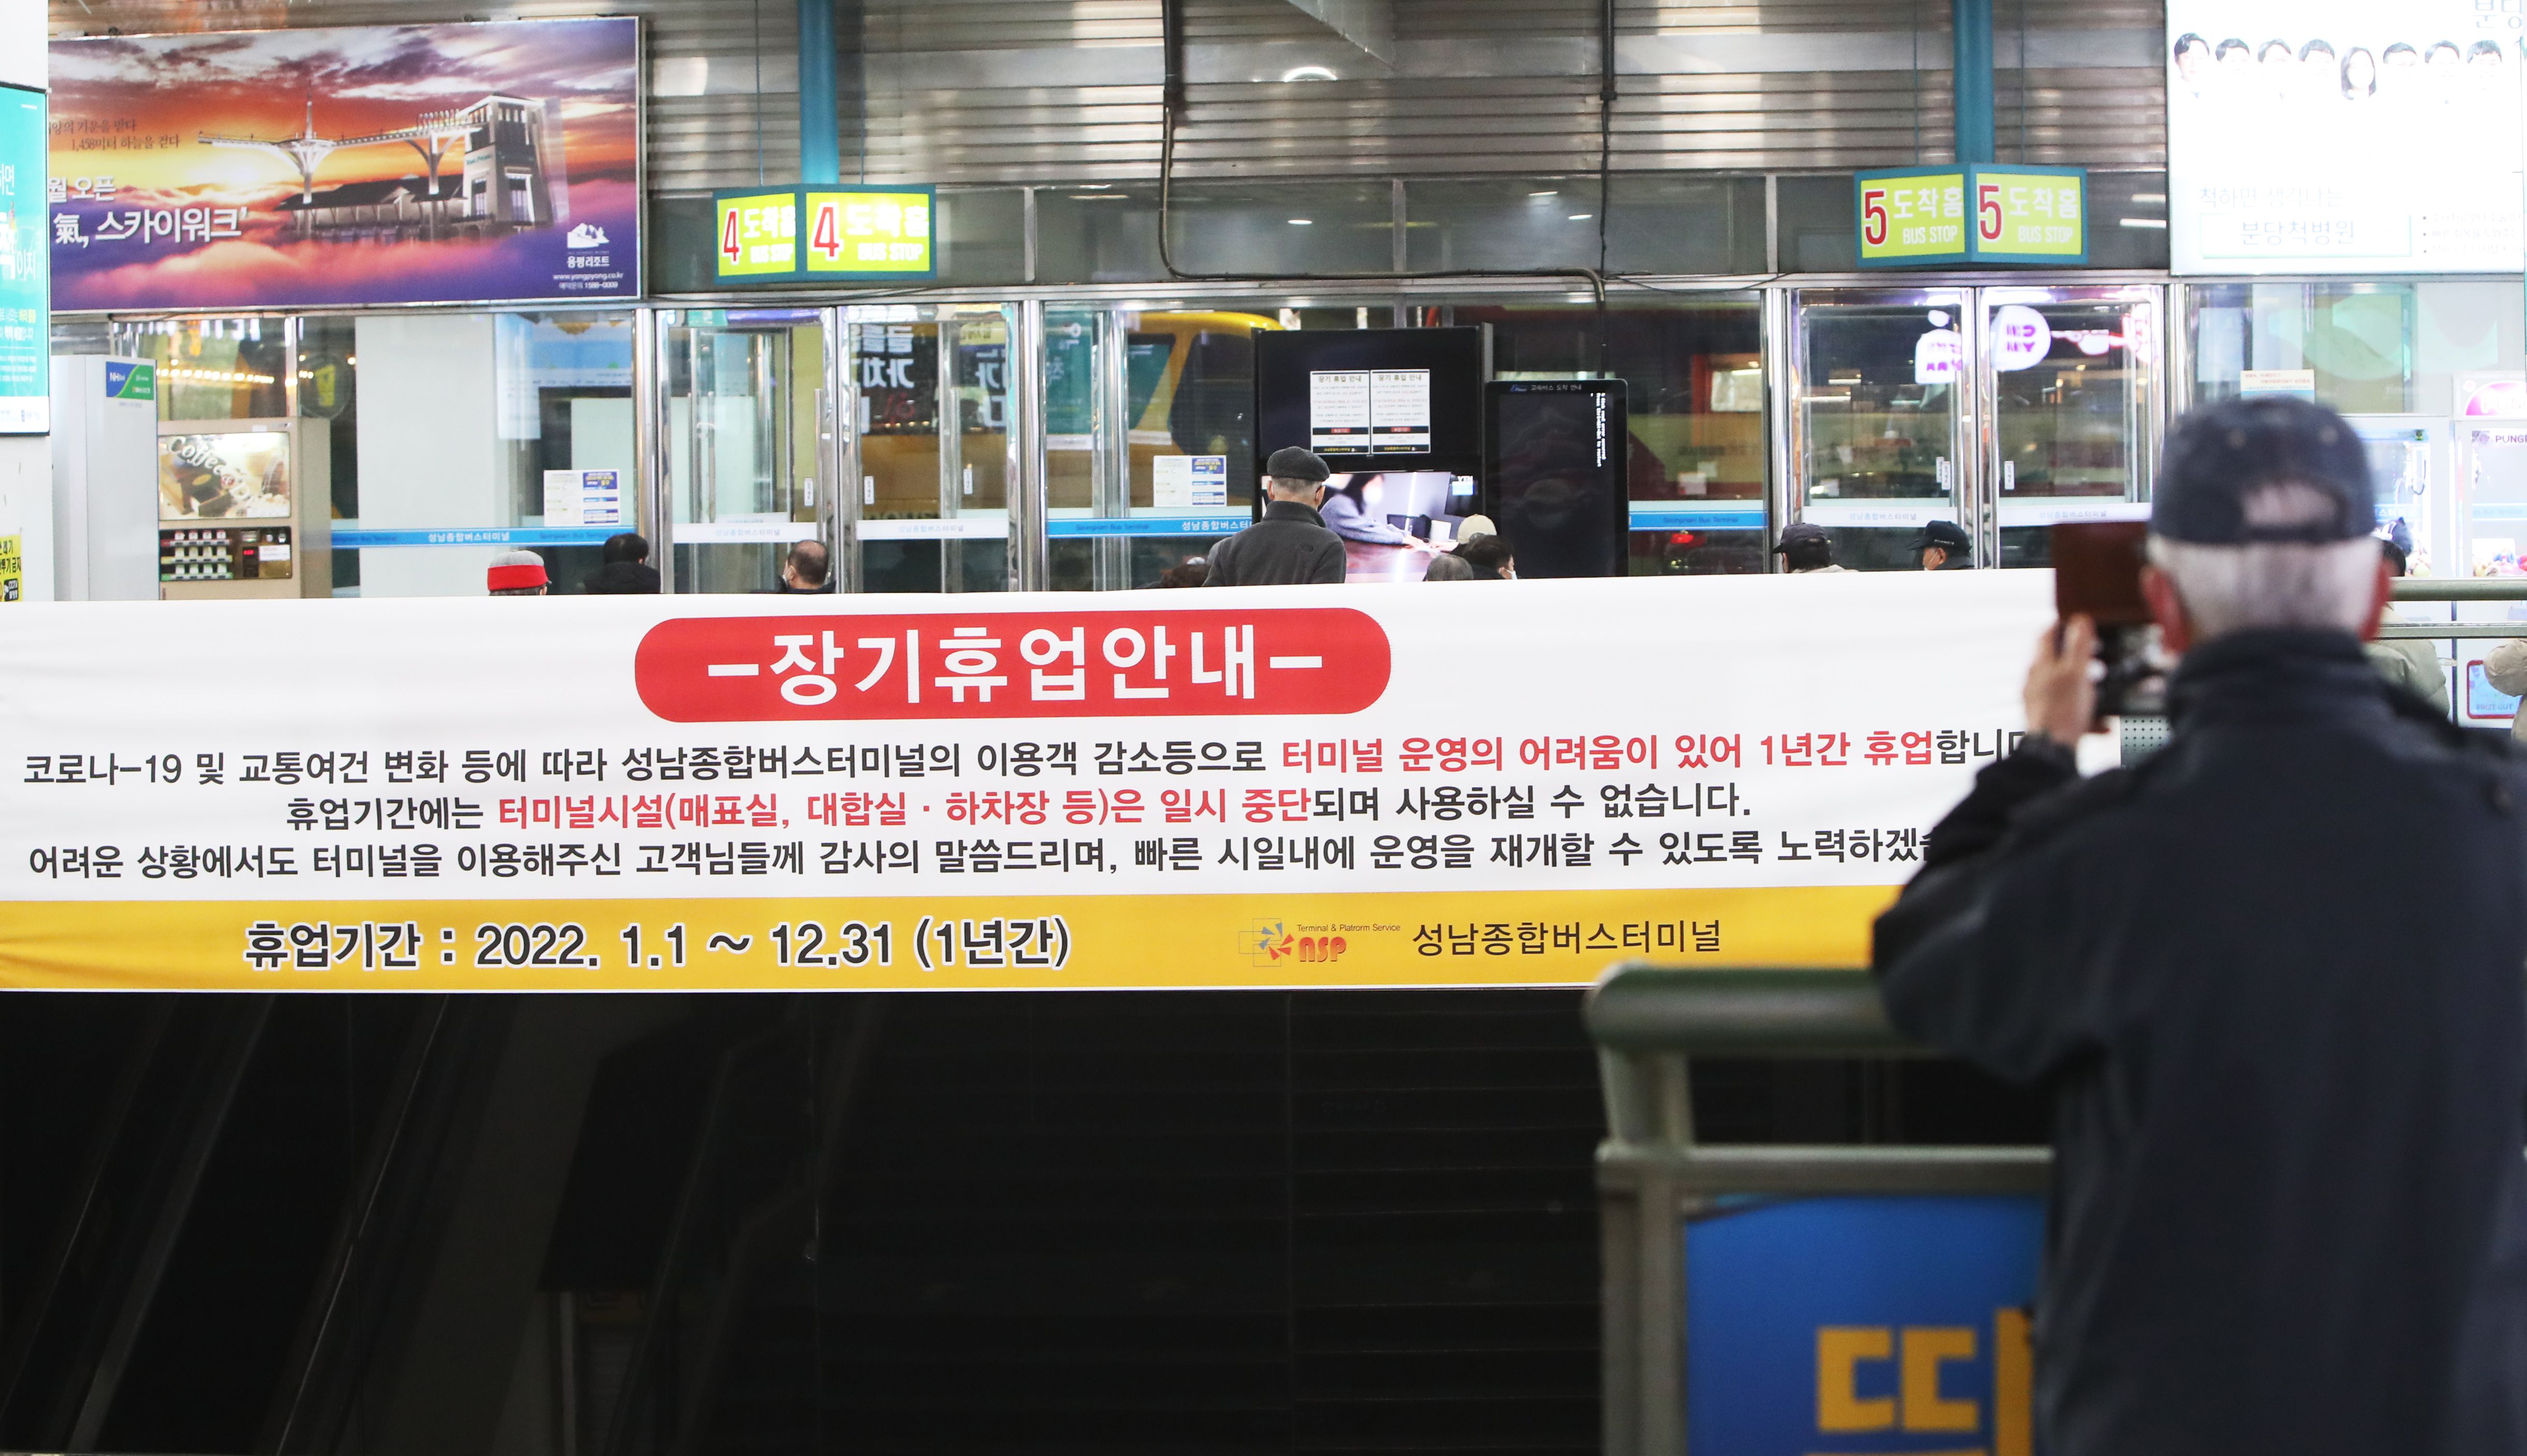 지난 14일 성남종합버스터미널에 휴업 관련 안내문이 붙어 있다. /연합뉴스